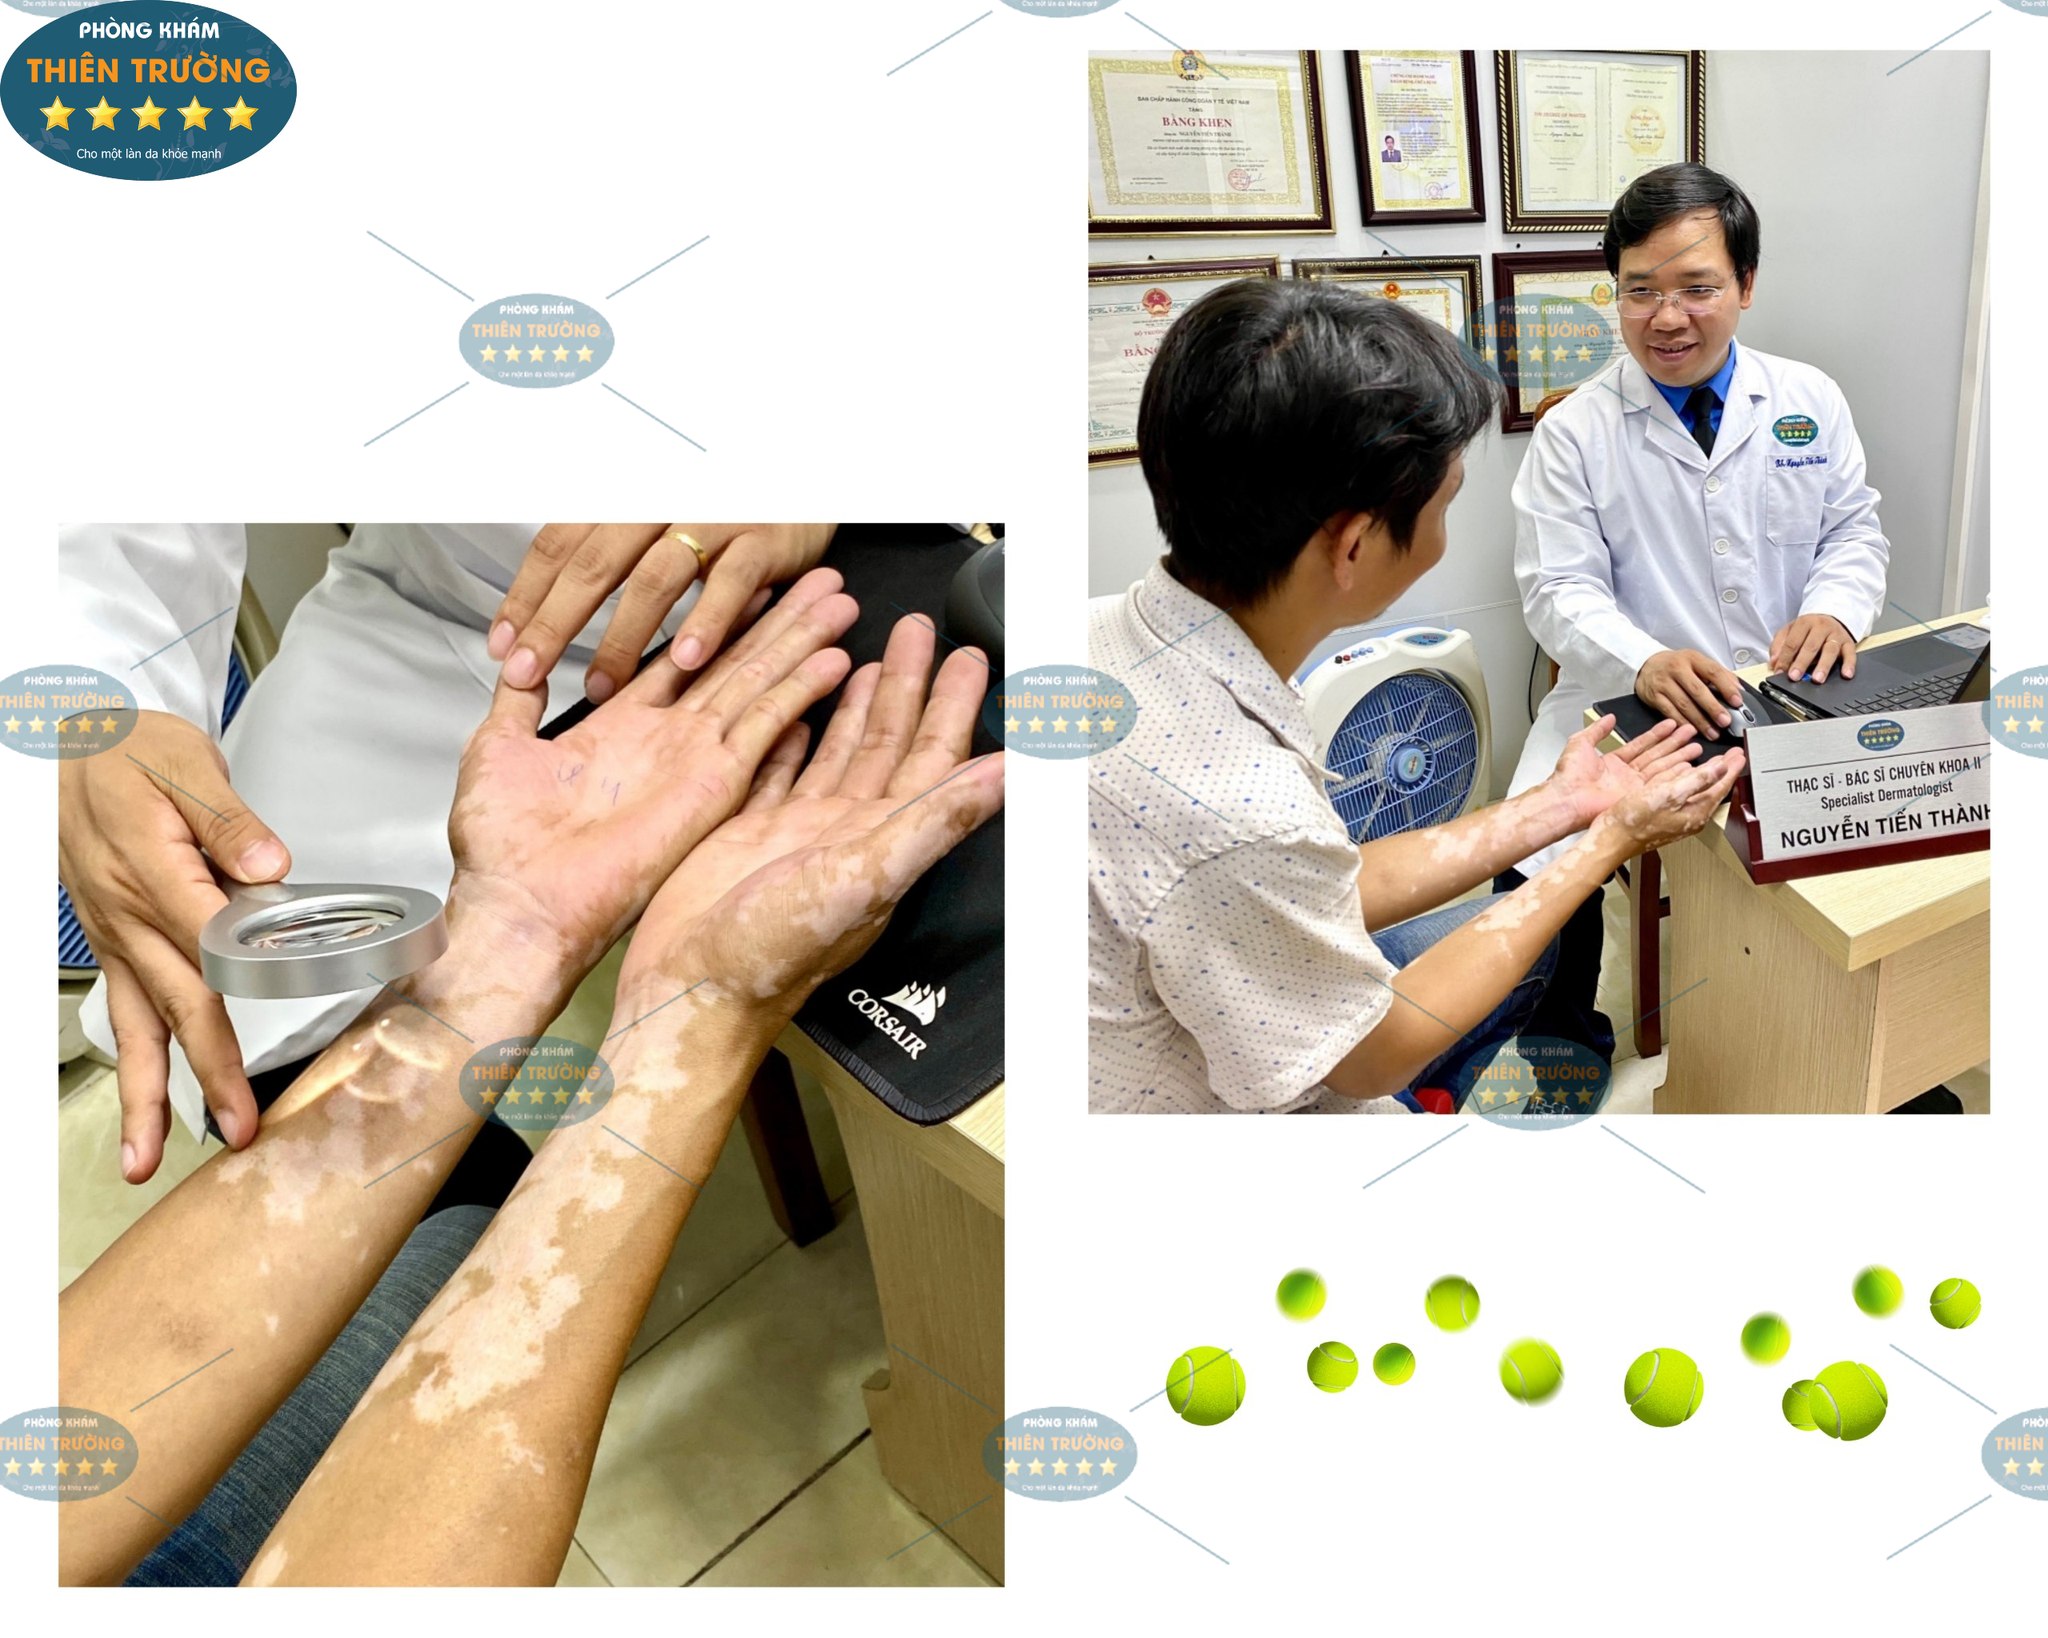 Hình ảnh: Thạc sĩ- Bác sĩ CK II Nguyễn Tiến Thành đang khám cho khách hàng bị bạch biến tại Phòng khám Da liễu thẩm mỹ Thiên Trường.